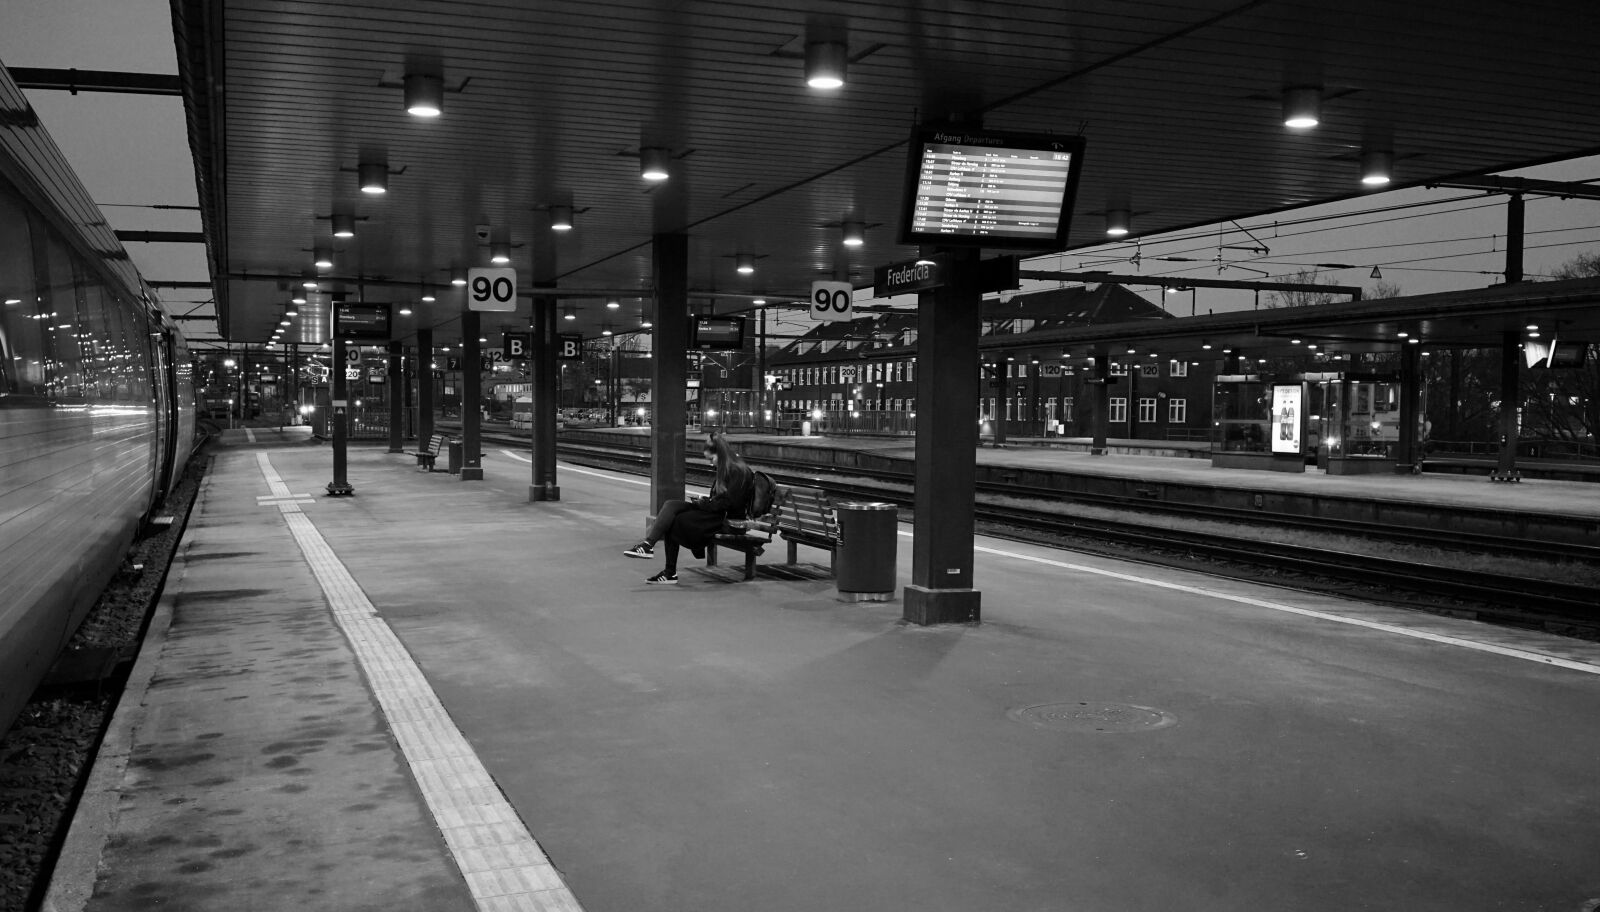 Samyang AF 35mm F2.8 FE sample photo. Platform, wait, railway station photography